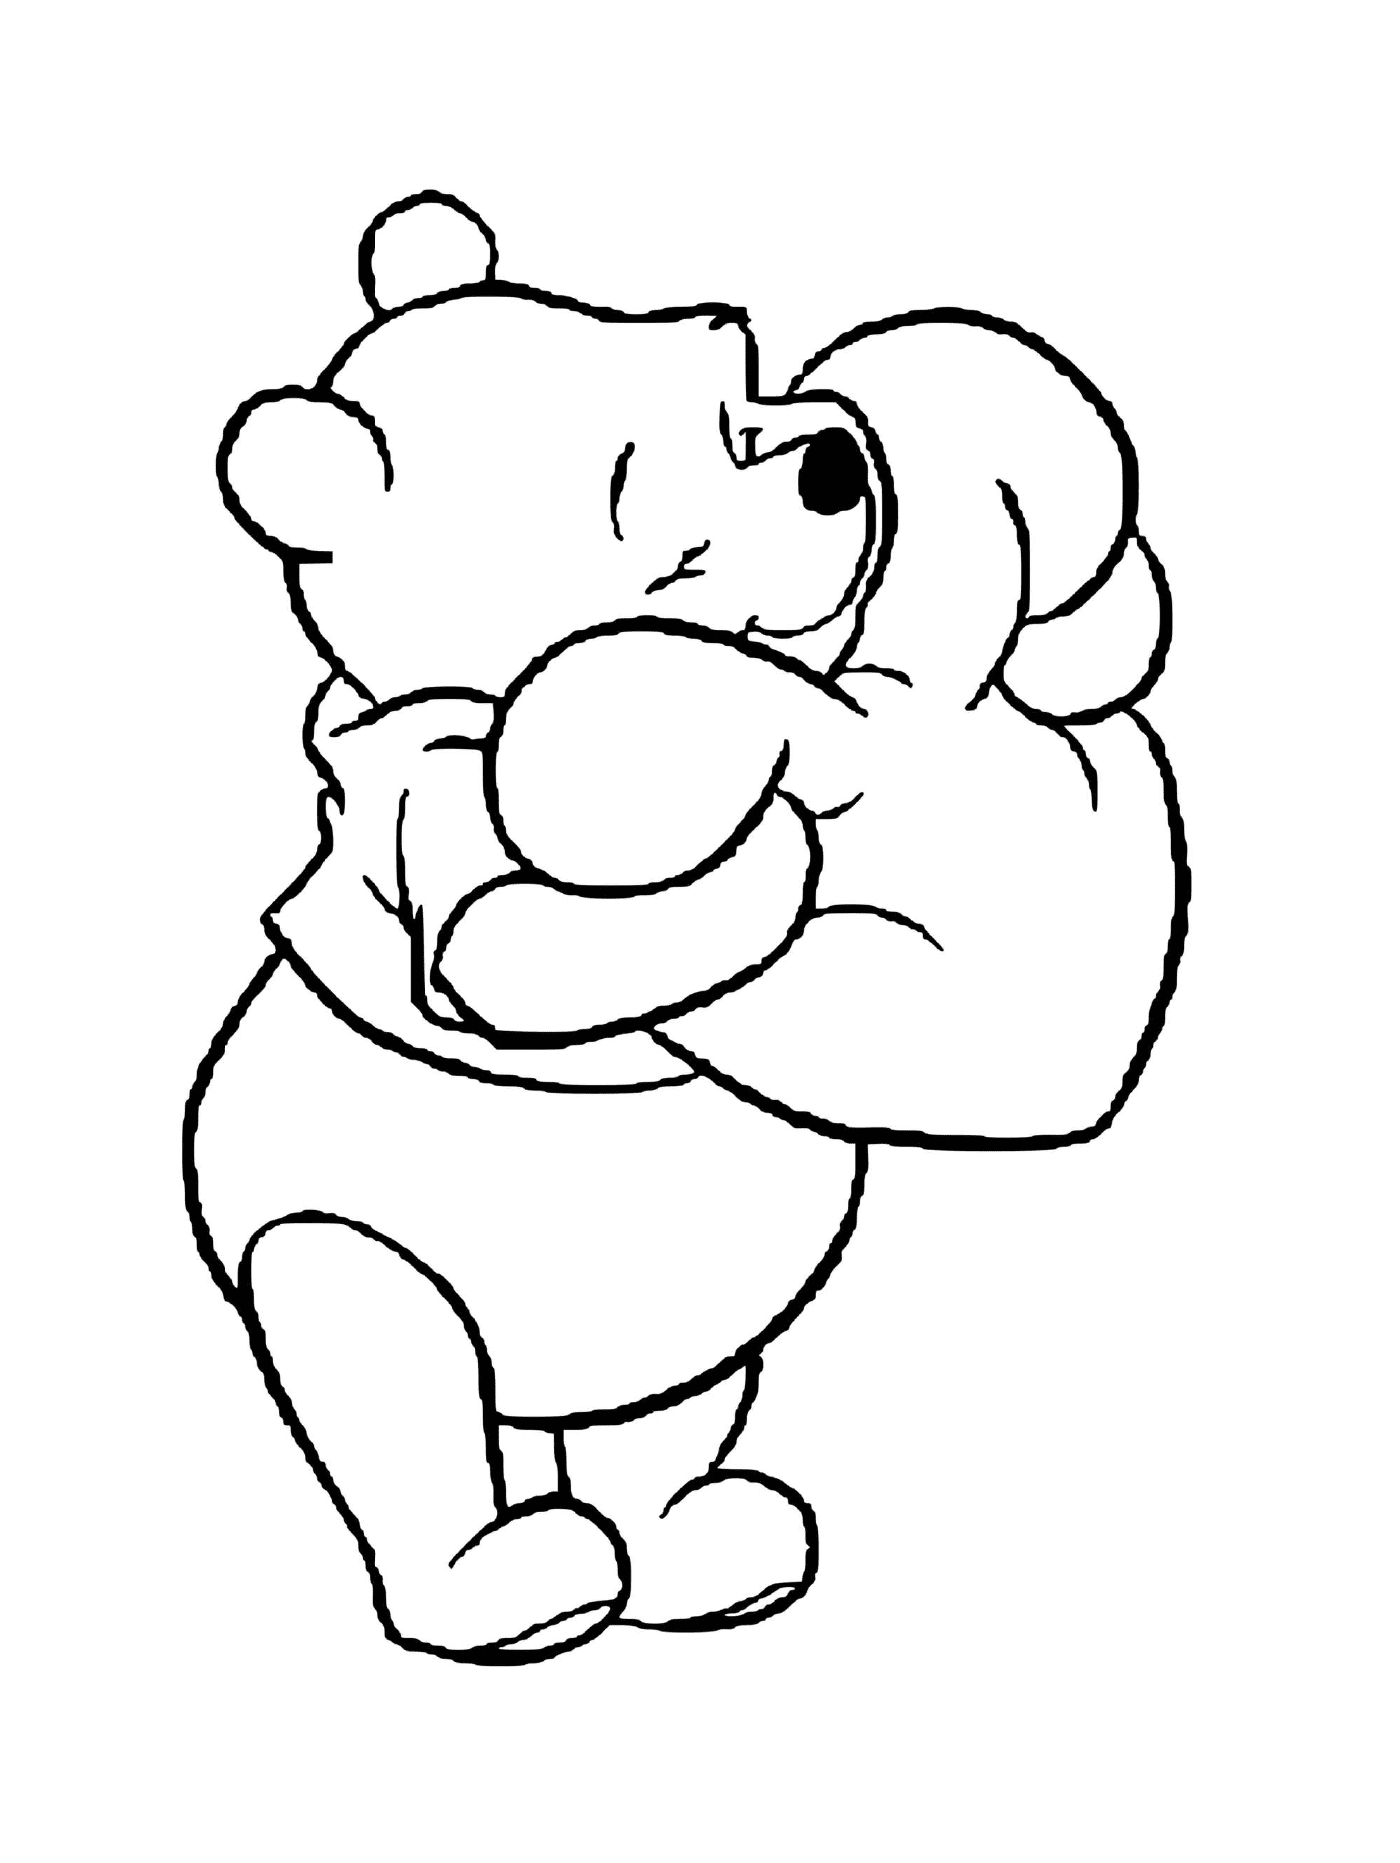  Winnie el oso recibe un cojín en forma de corazón 